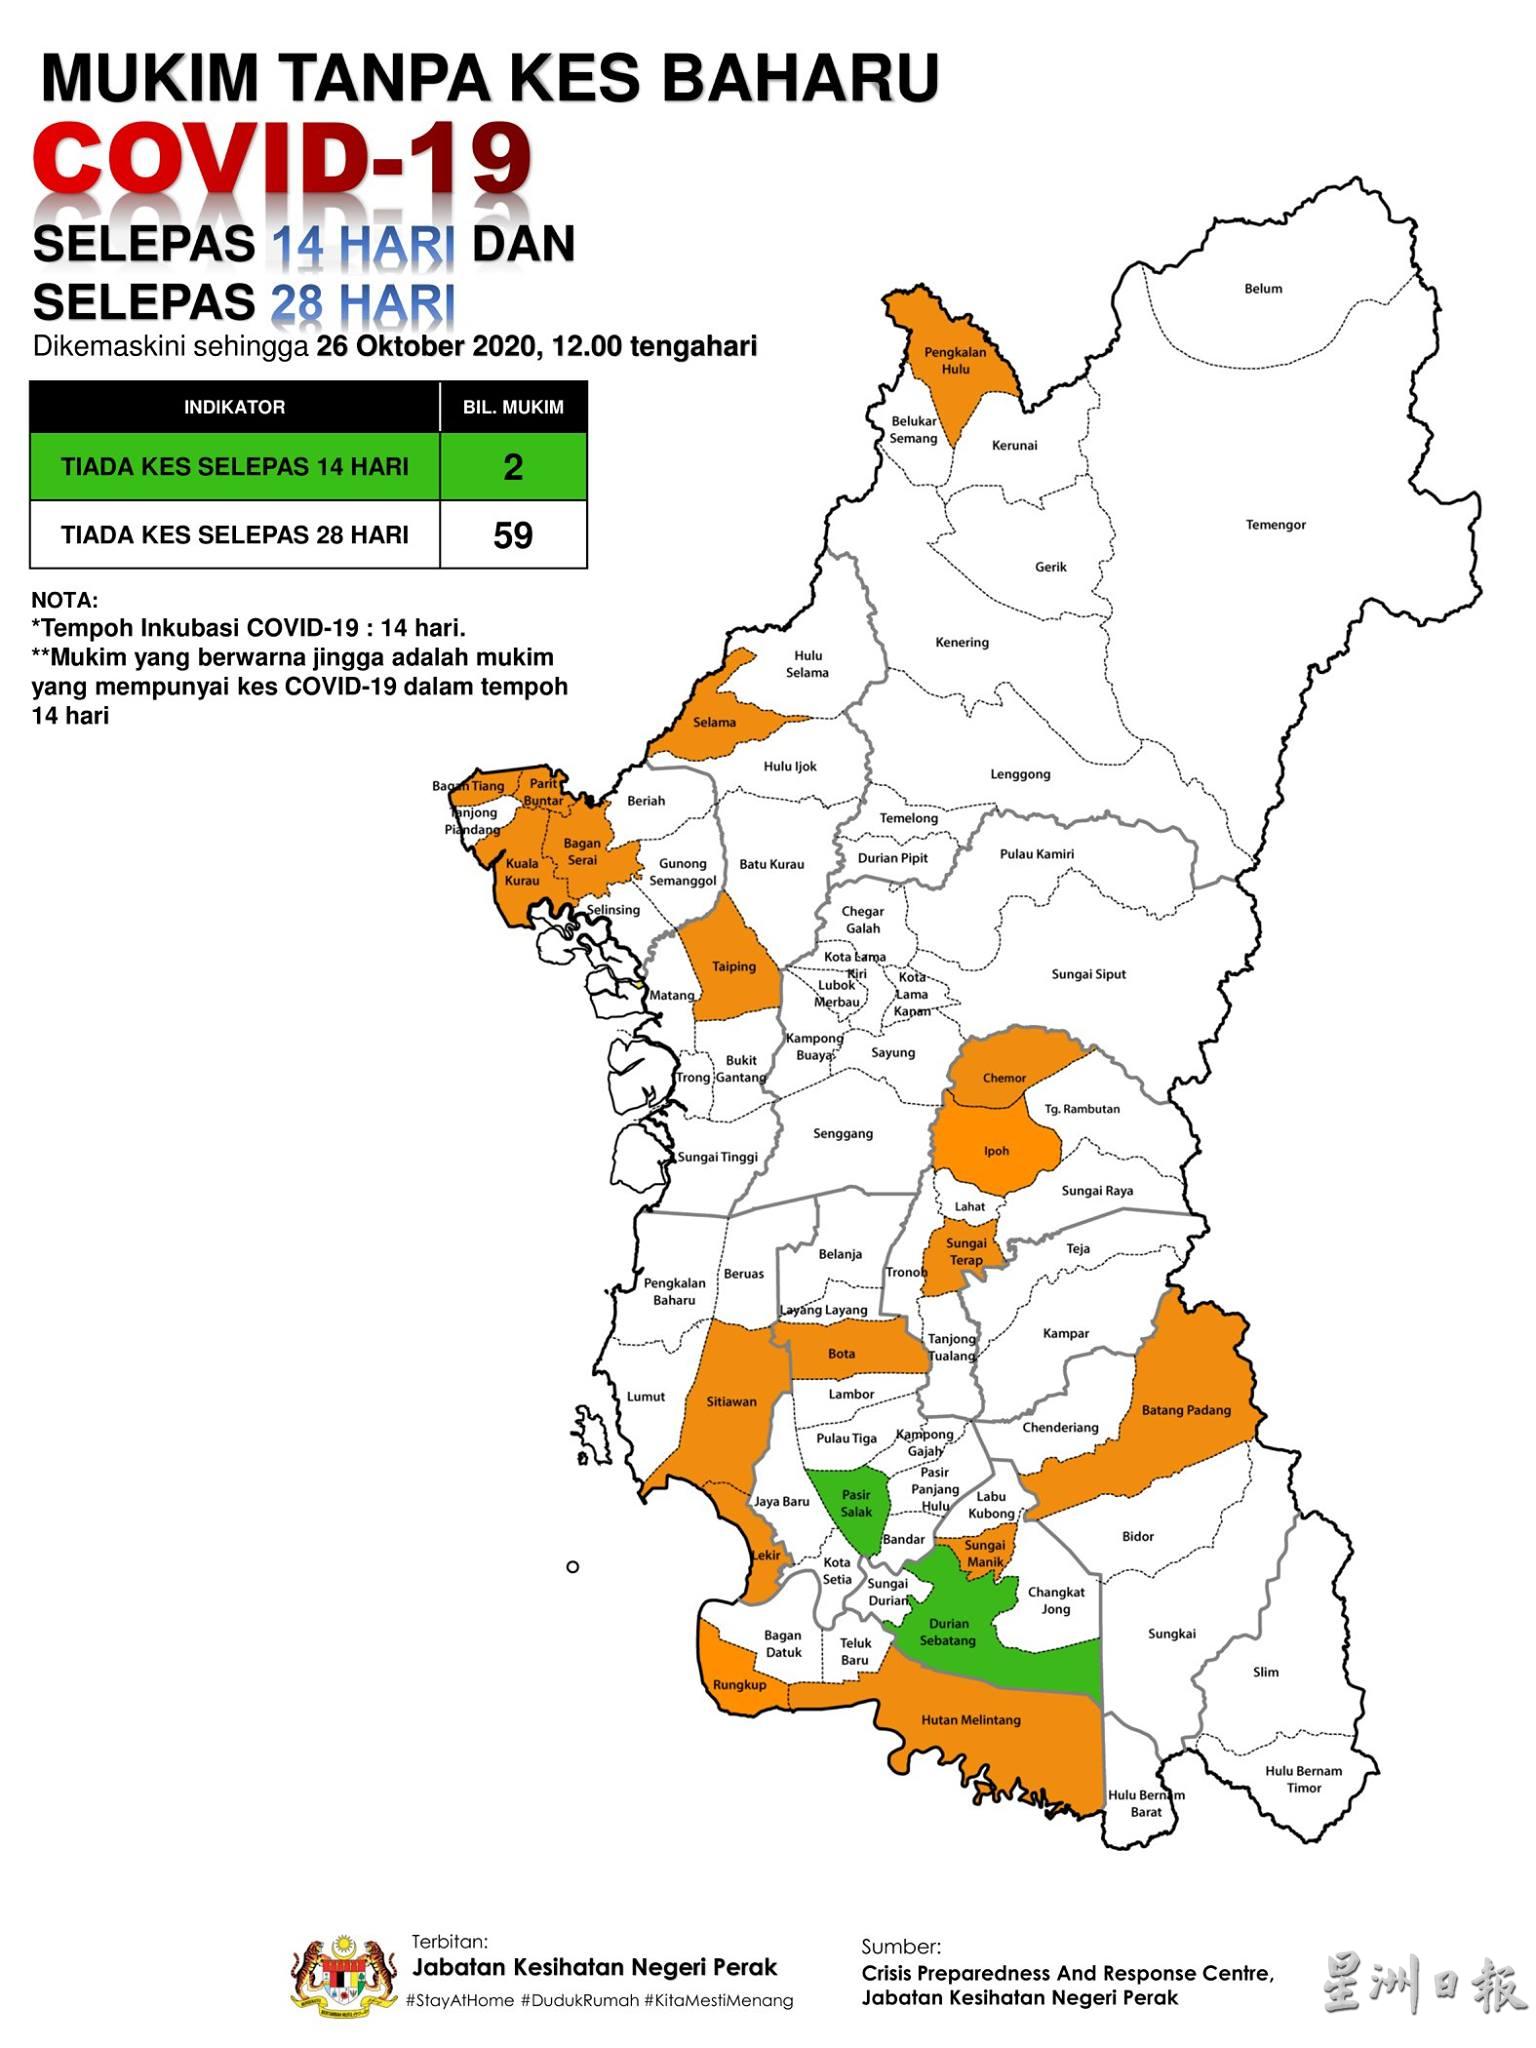 霹雳州的橙区已经增至17个，另还有2个绿区。

